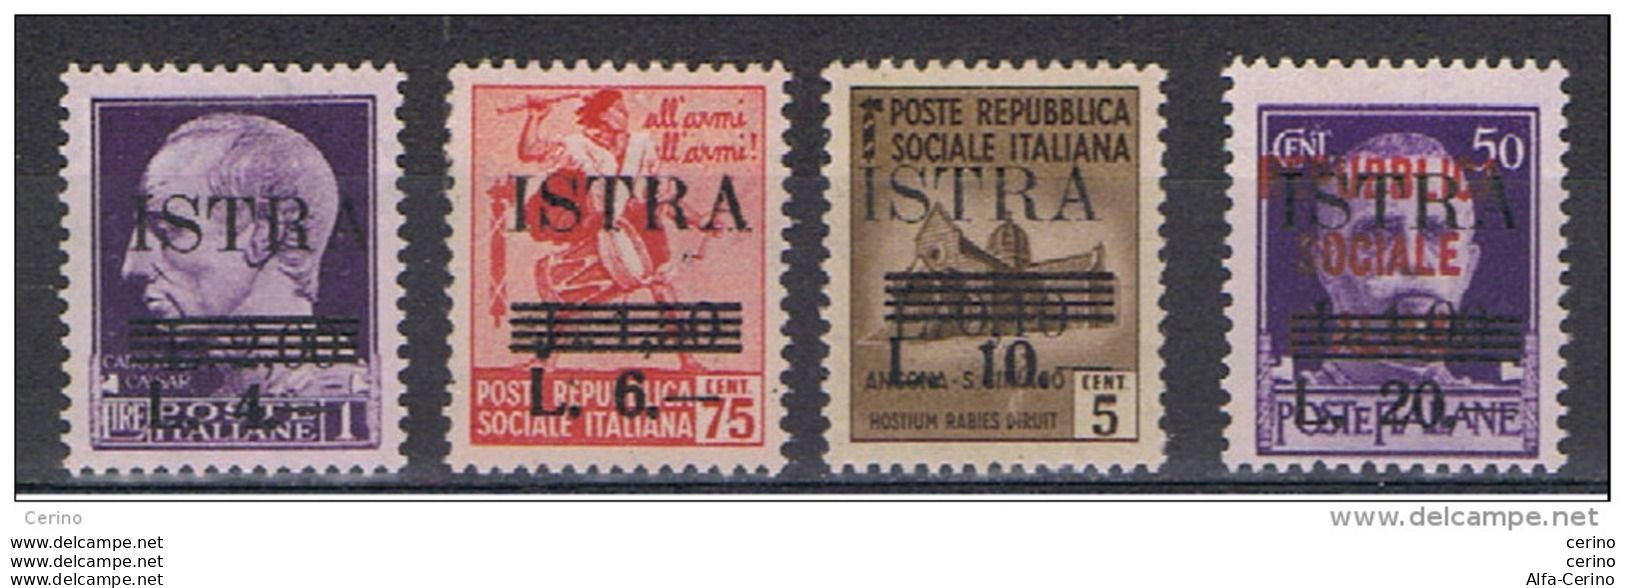 ISTRIA - OCC. JUGOSLAVA:  1945  SOPRSTAMPATI  -  S. CPL. 4  VAL. N. -  SASS. 37/40 - Jugoslawische Bes.: Istrien